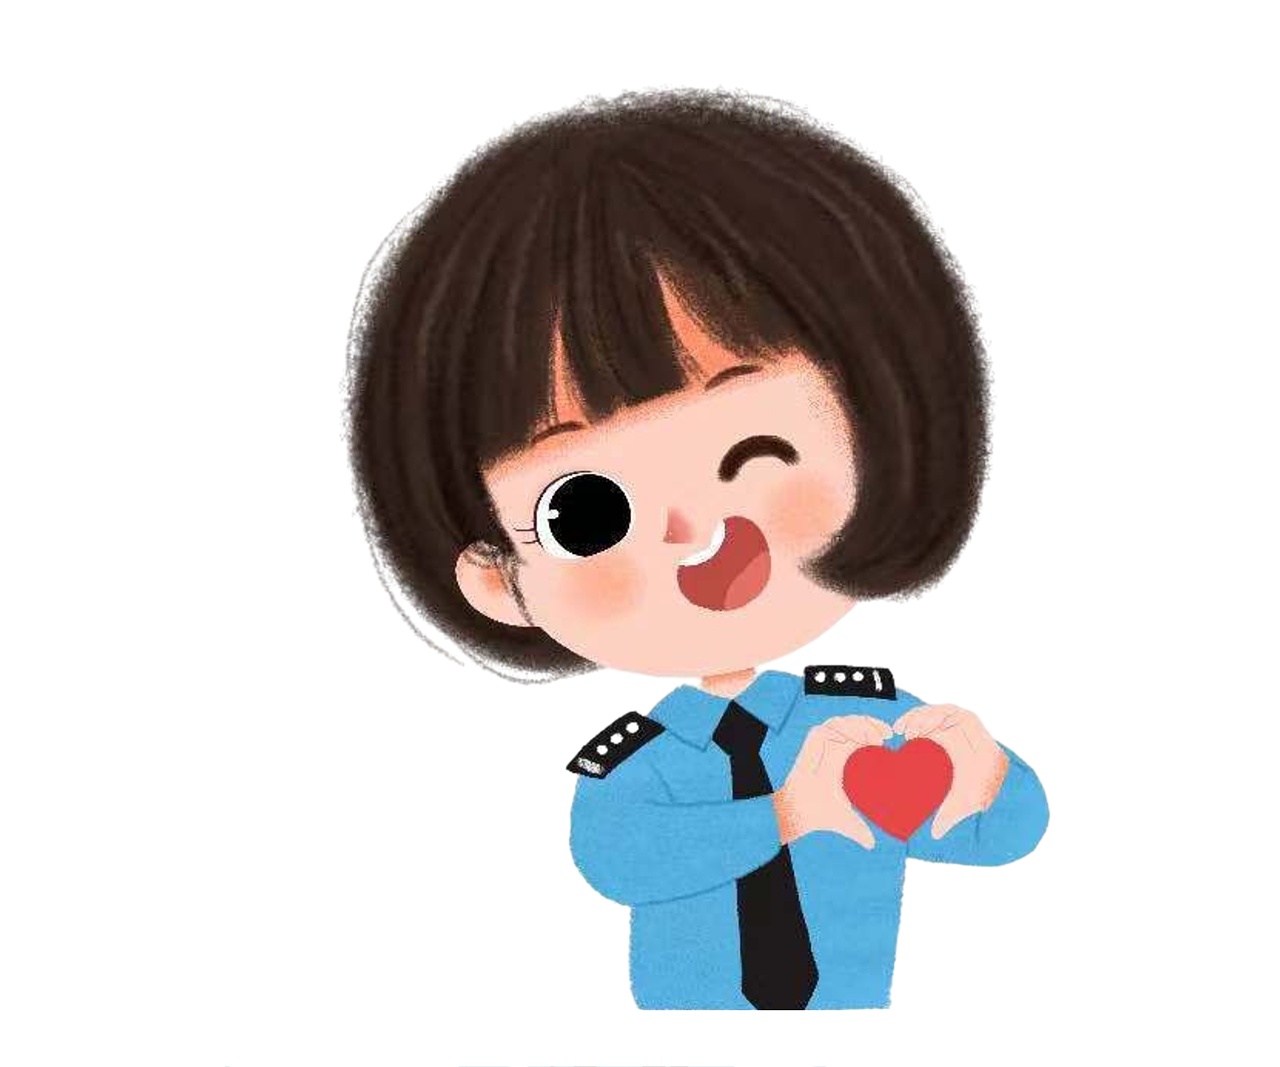 警察情侣头像 可爱图片